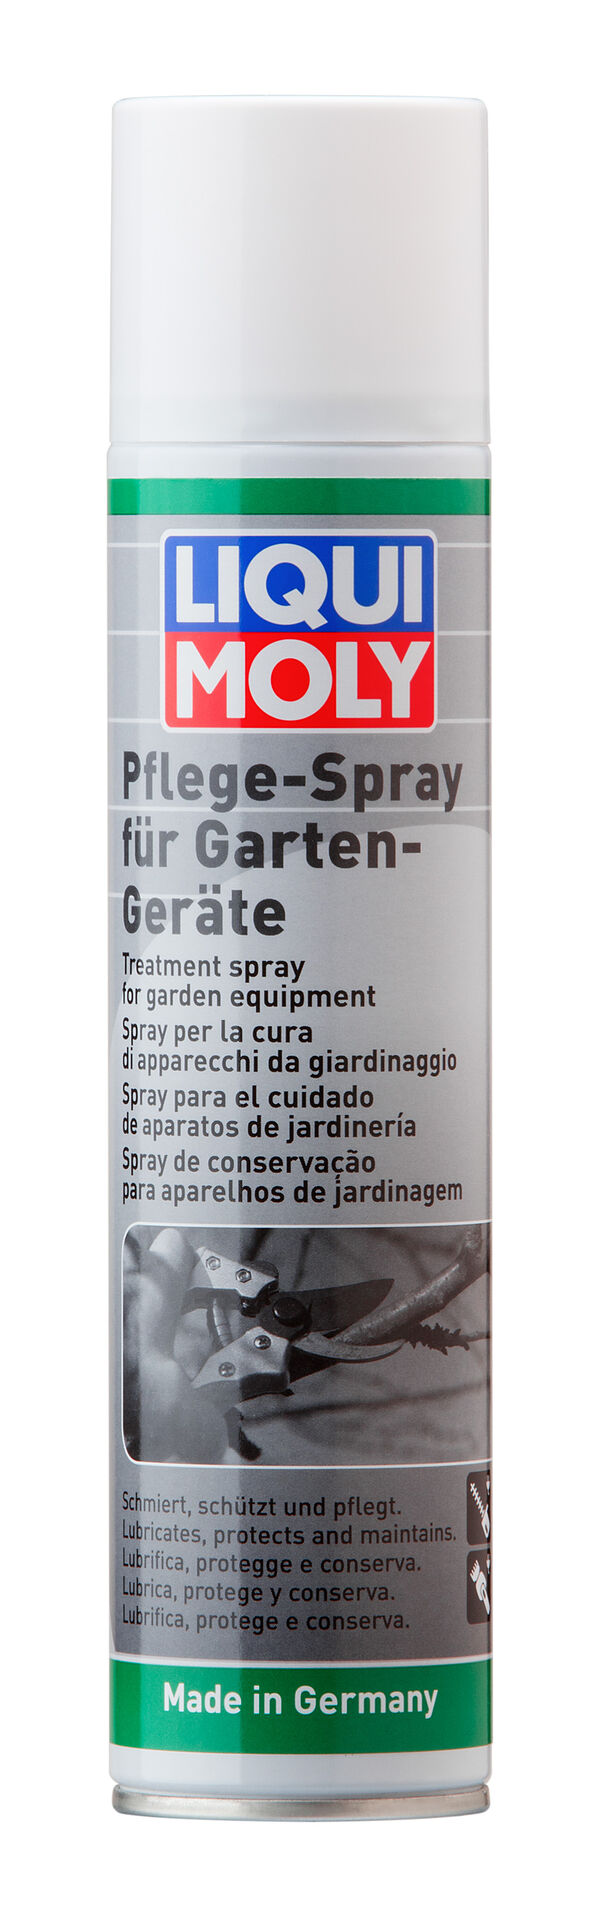 Liqui Moly Pflege Spray für Garten Geräte Gerätepflege 300 ml